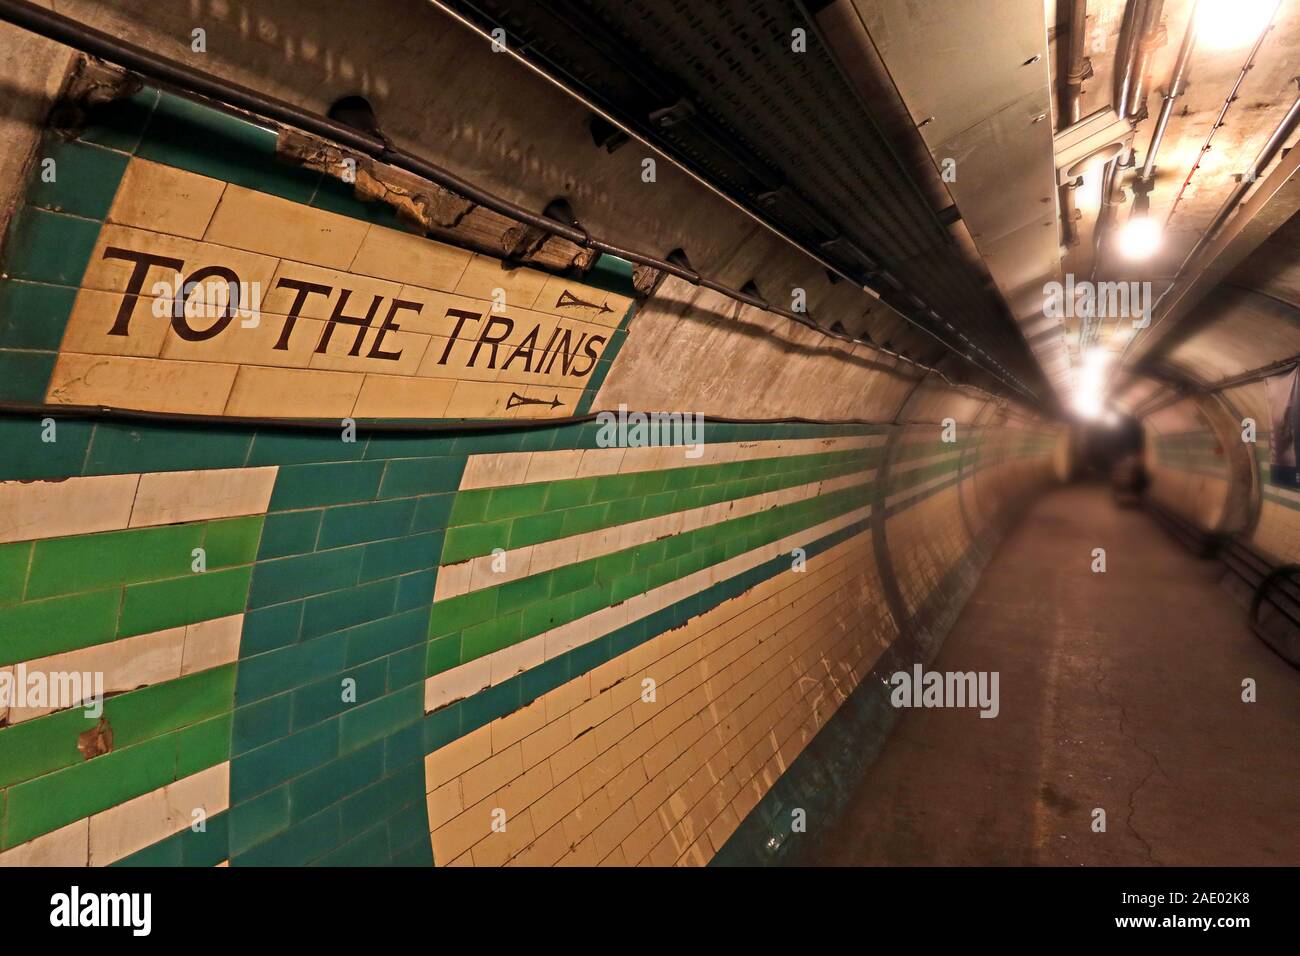 Zum Zugschild, LU, London Underground, Stockfoto